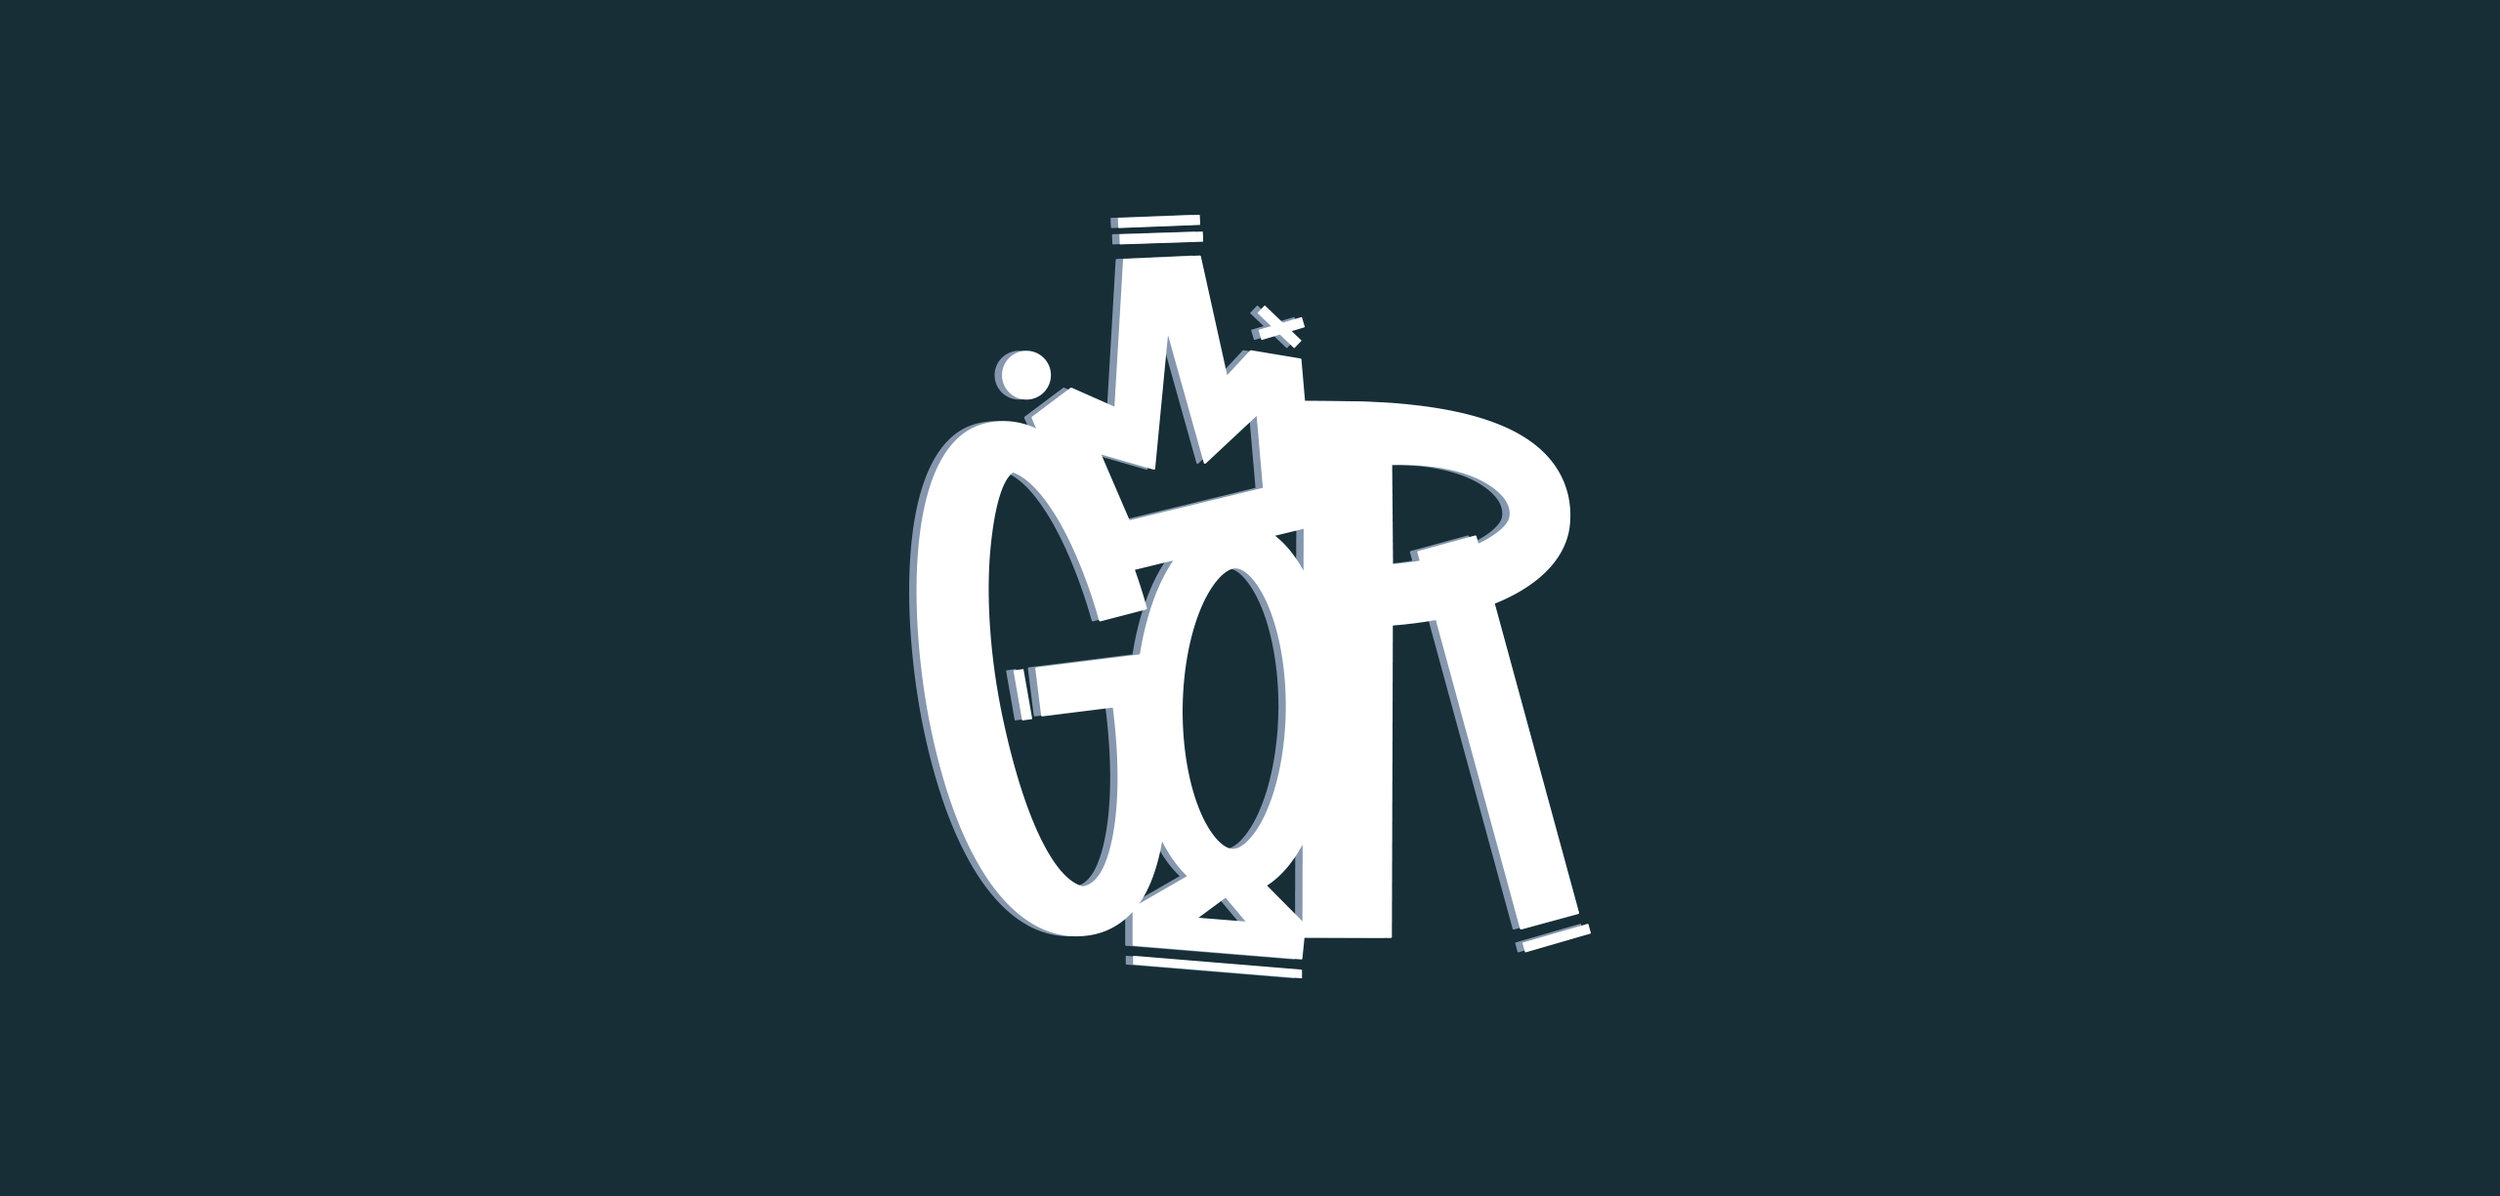 gor_logo.jpg